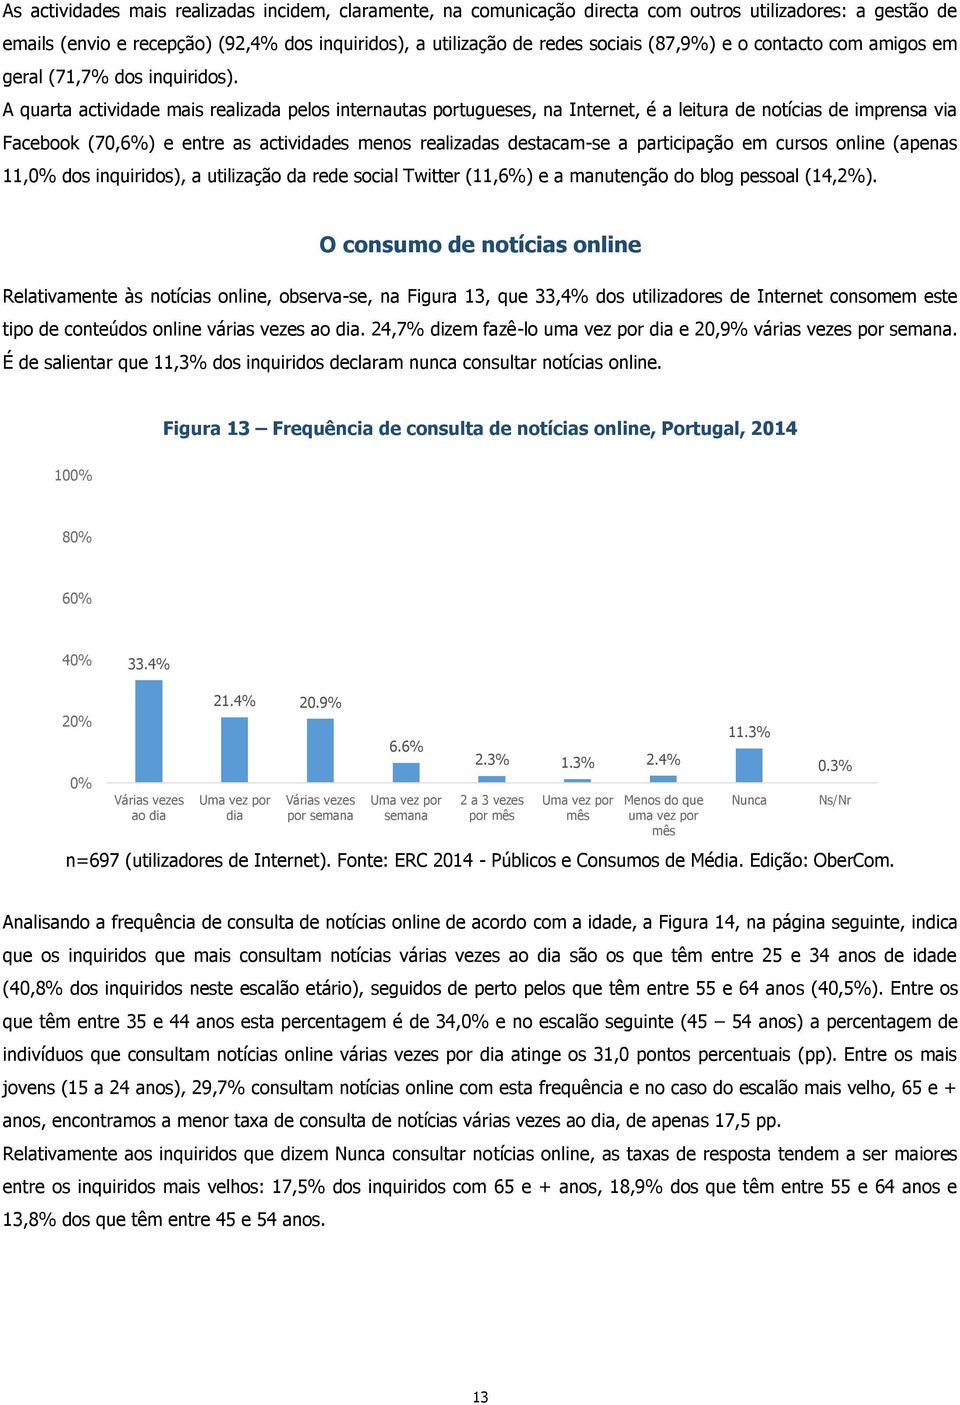 A quarta actividade mais realizada pelos internautas portugueses, na Internet, é a leitura de notícias de imprensa via Facebook (70,6%) e entre as actividades menos realizadas destacam-se a